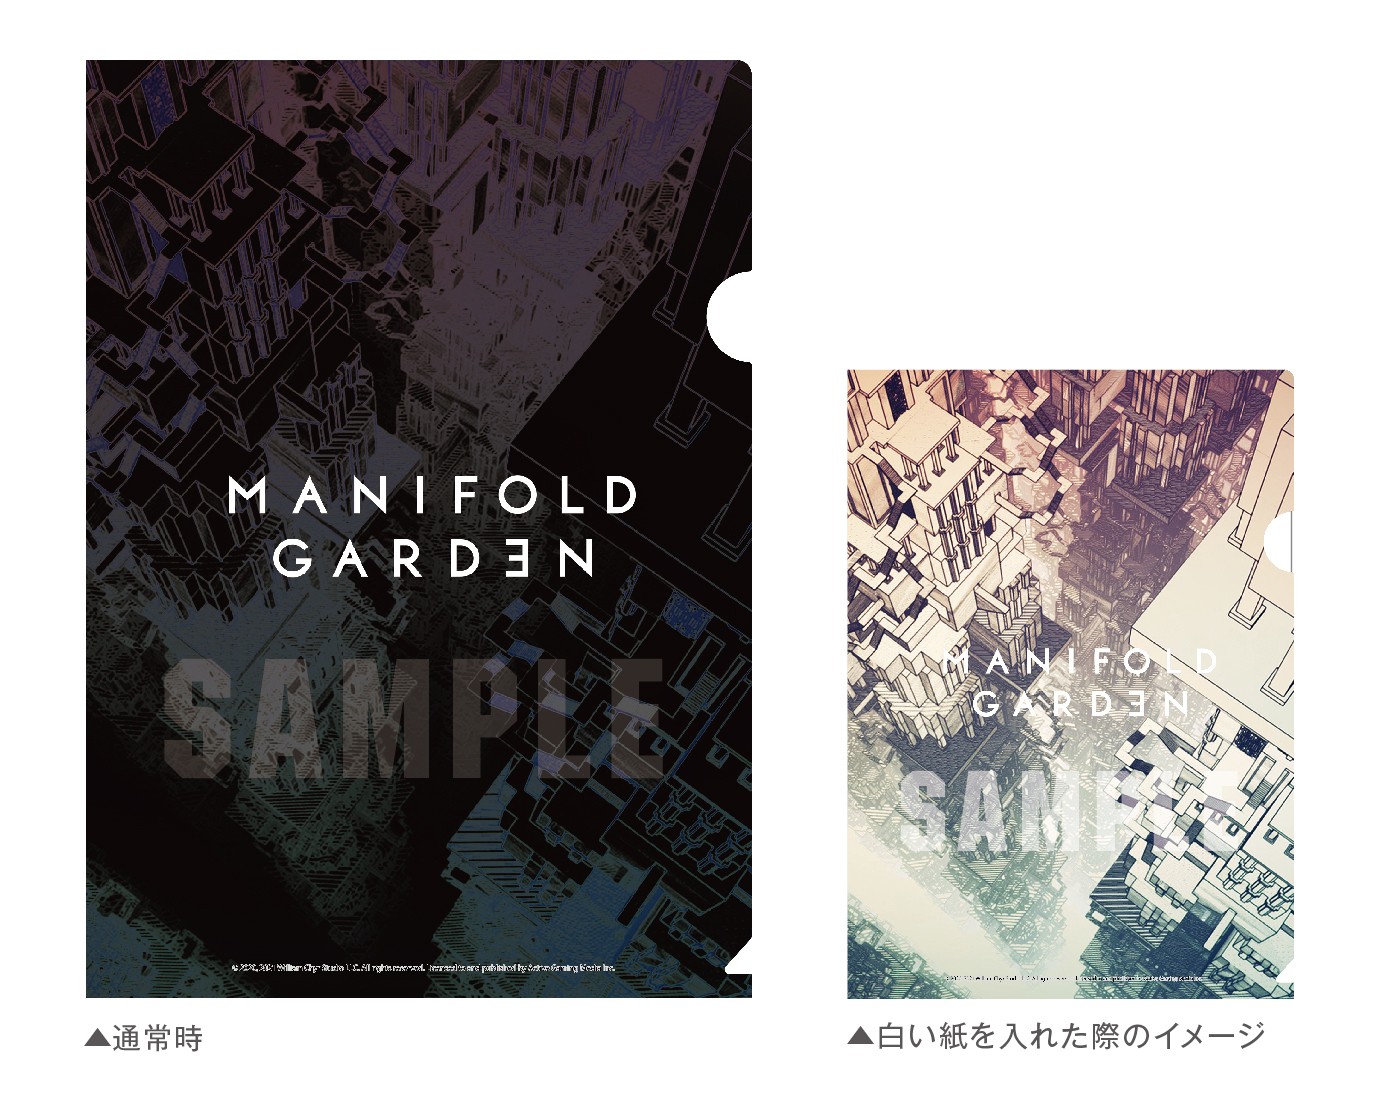 解謎遊戲《多重花園 Manifold Garden》PS5 版加入主機版同步發售陣容